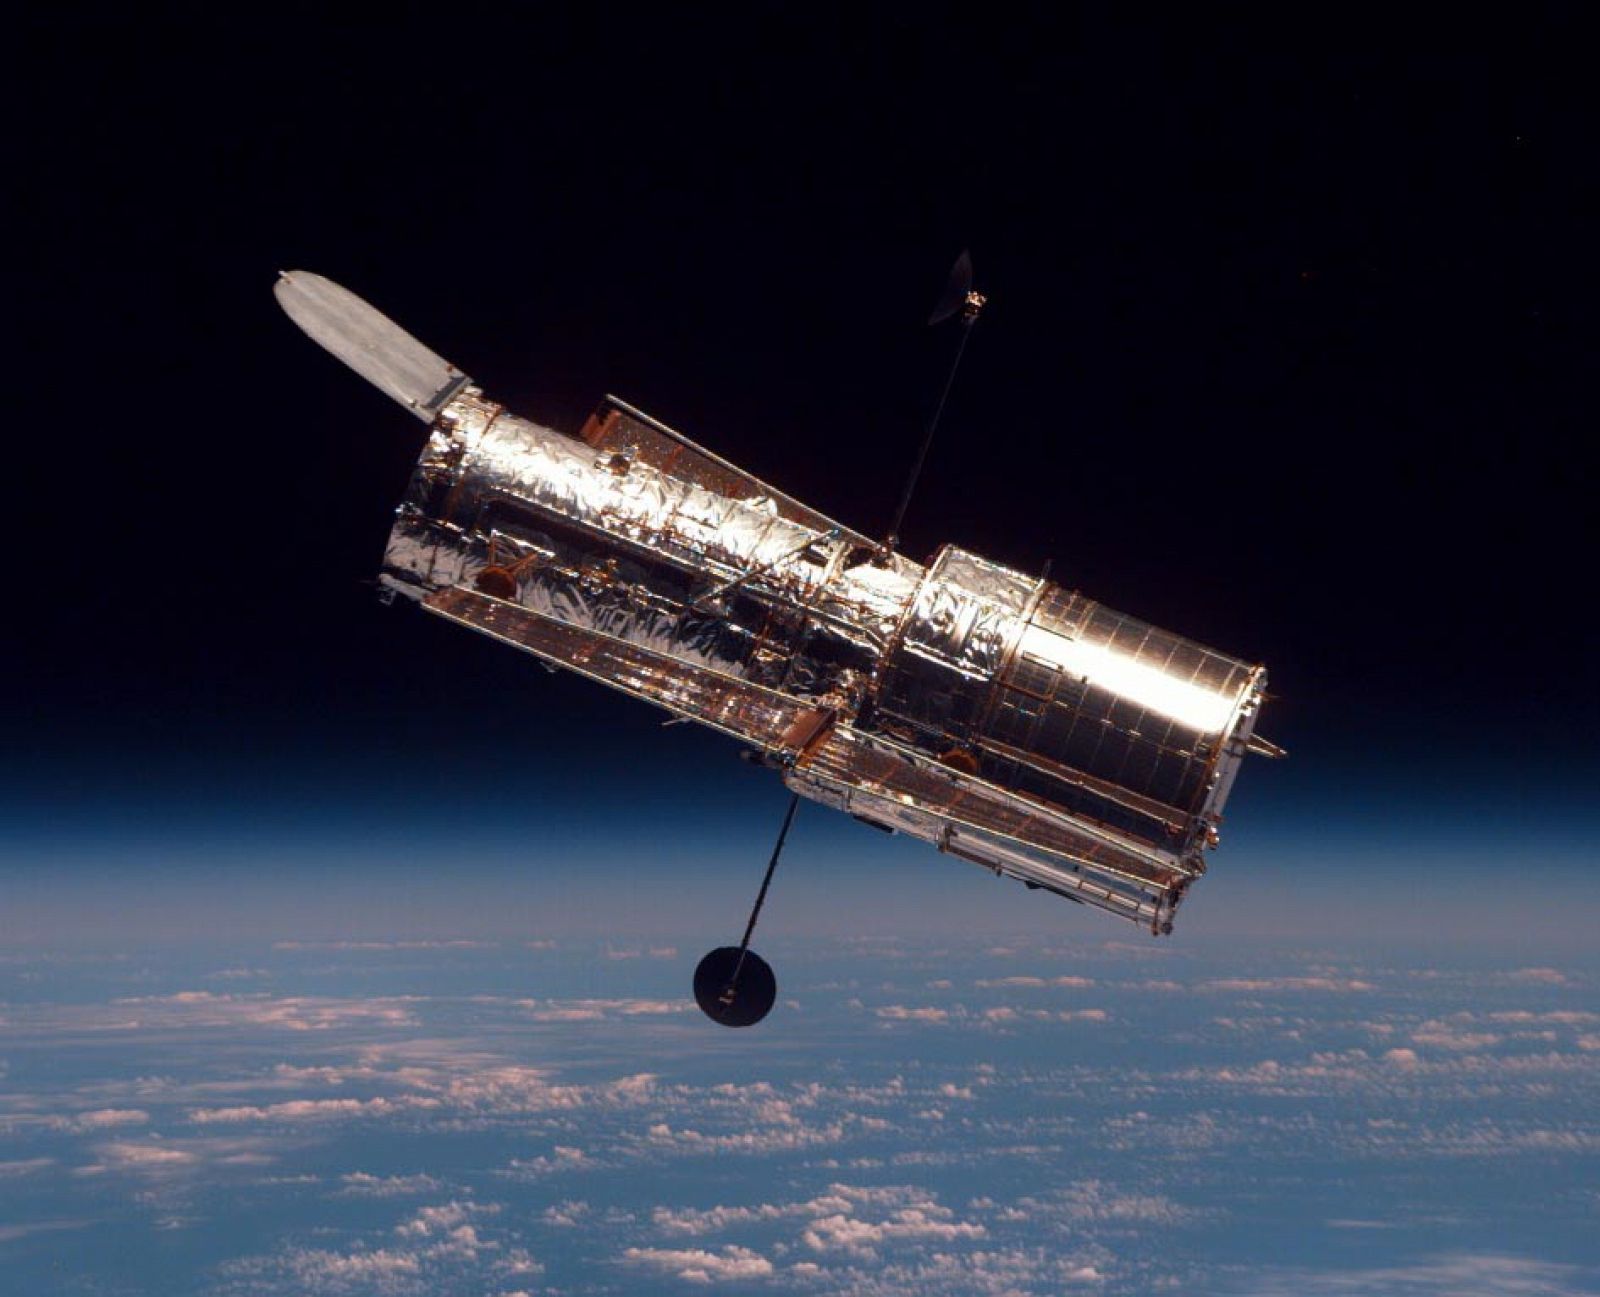 Imagen del telescopio Hubble tomada en 1997.